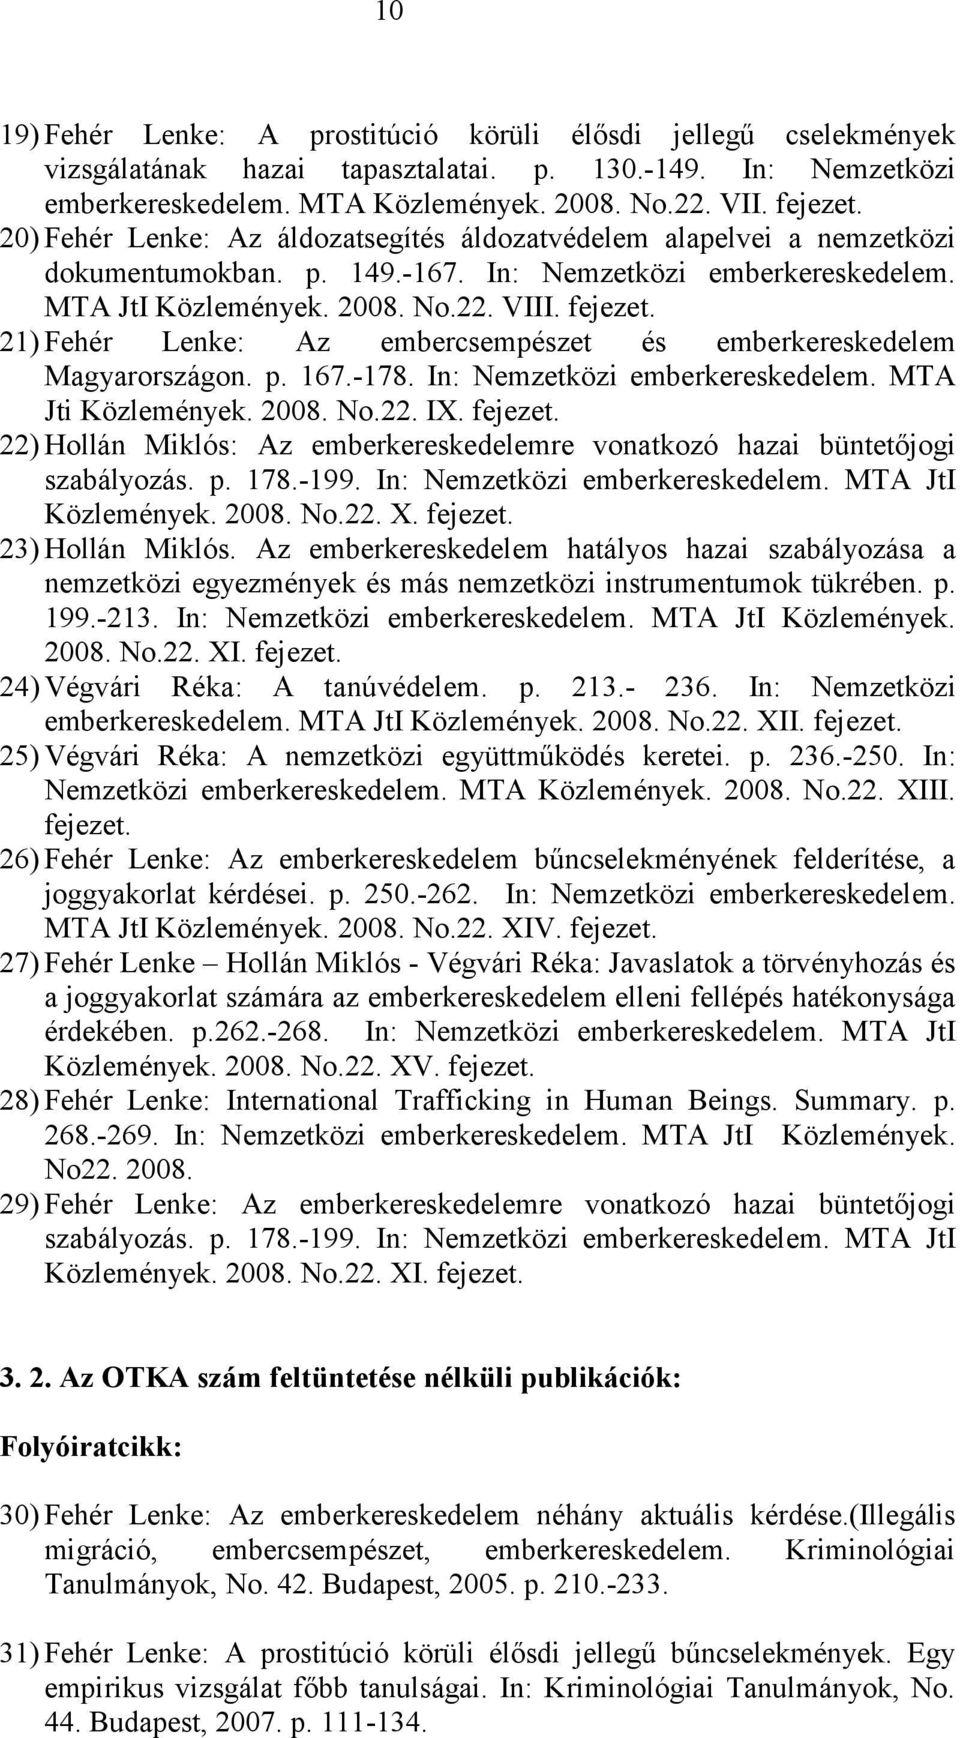 21) Fehér Lenke: Az embercsempészet és emberkereskedelem Magyarországon. p. 167.-178. In: Nemzetközi emberkereskedelem. MTA Jti Közlemények. 2008. No.22. IX. fejezet.